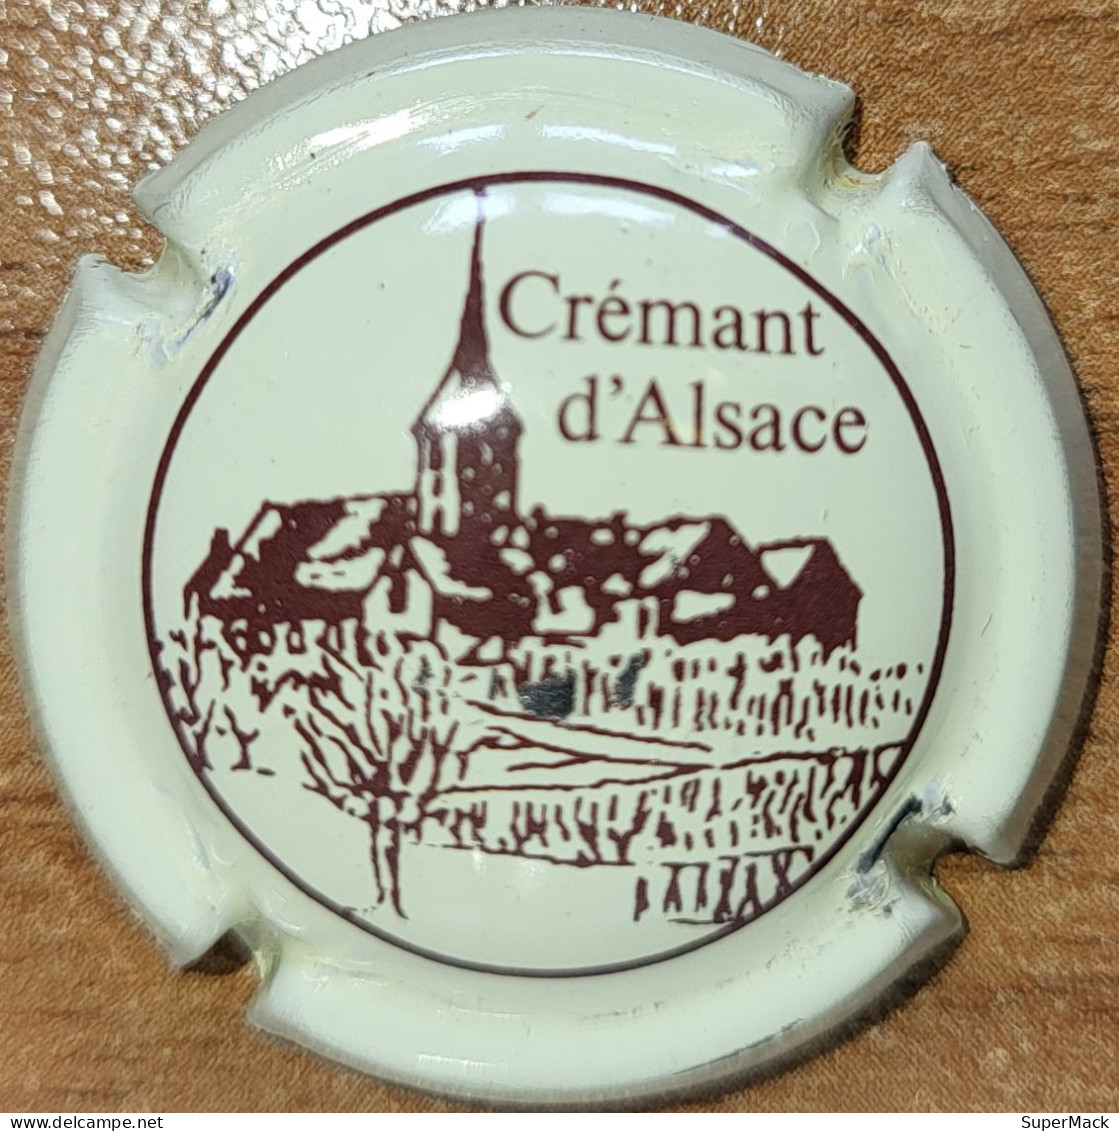 Capsule Crémant Alsace De VIGNERONS Série Clocher, Lettres épaisses, 't' Au Dessus Du 'c', Crème & Brun Nr 51 - Spumanti